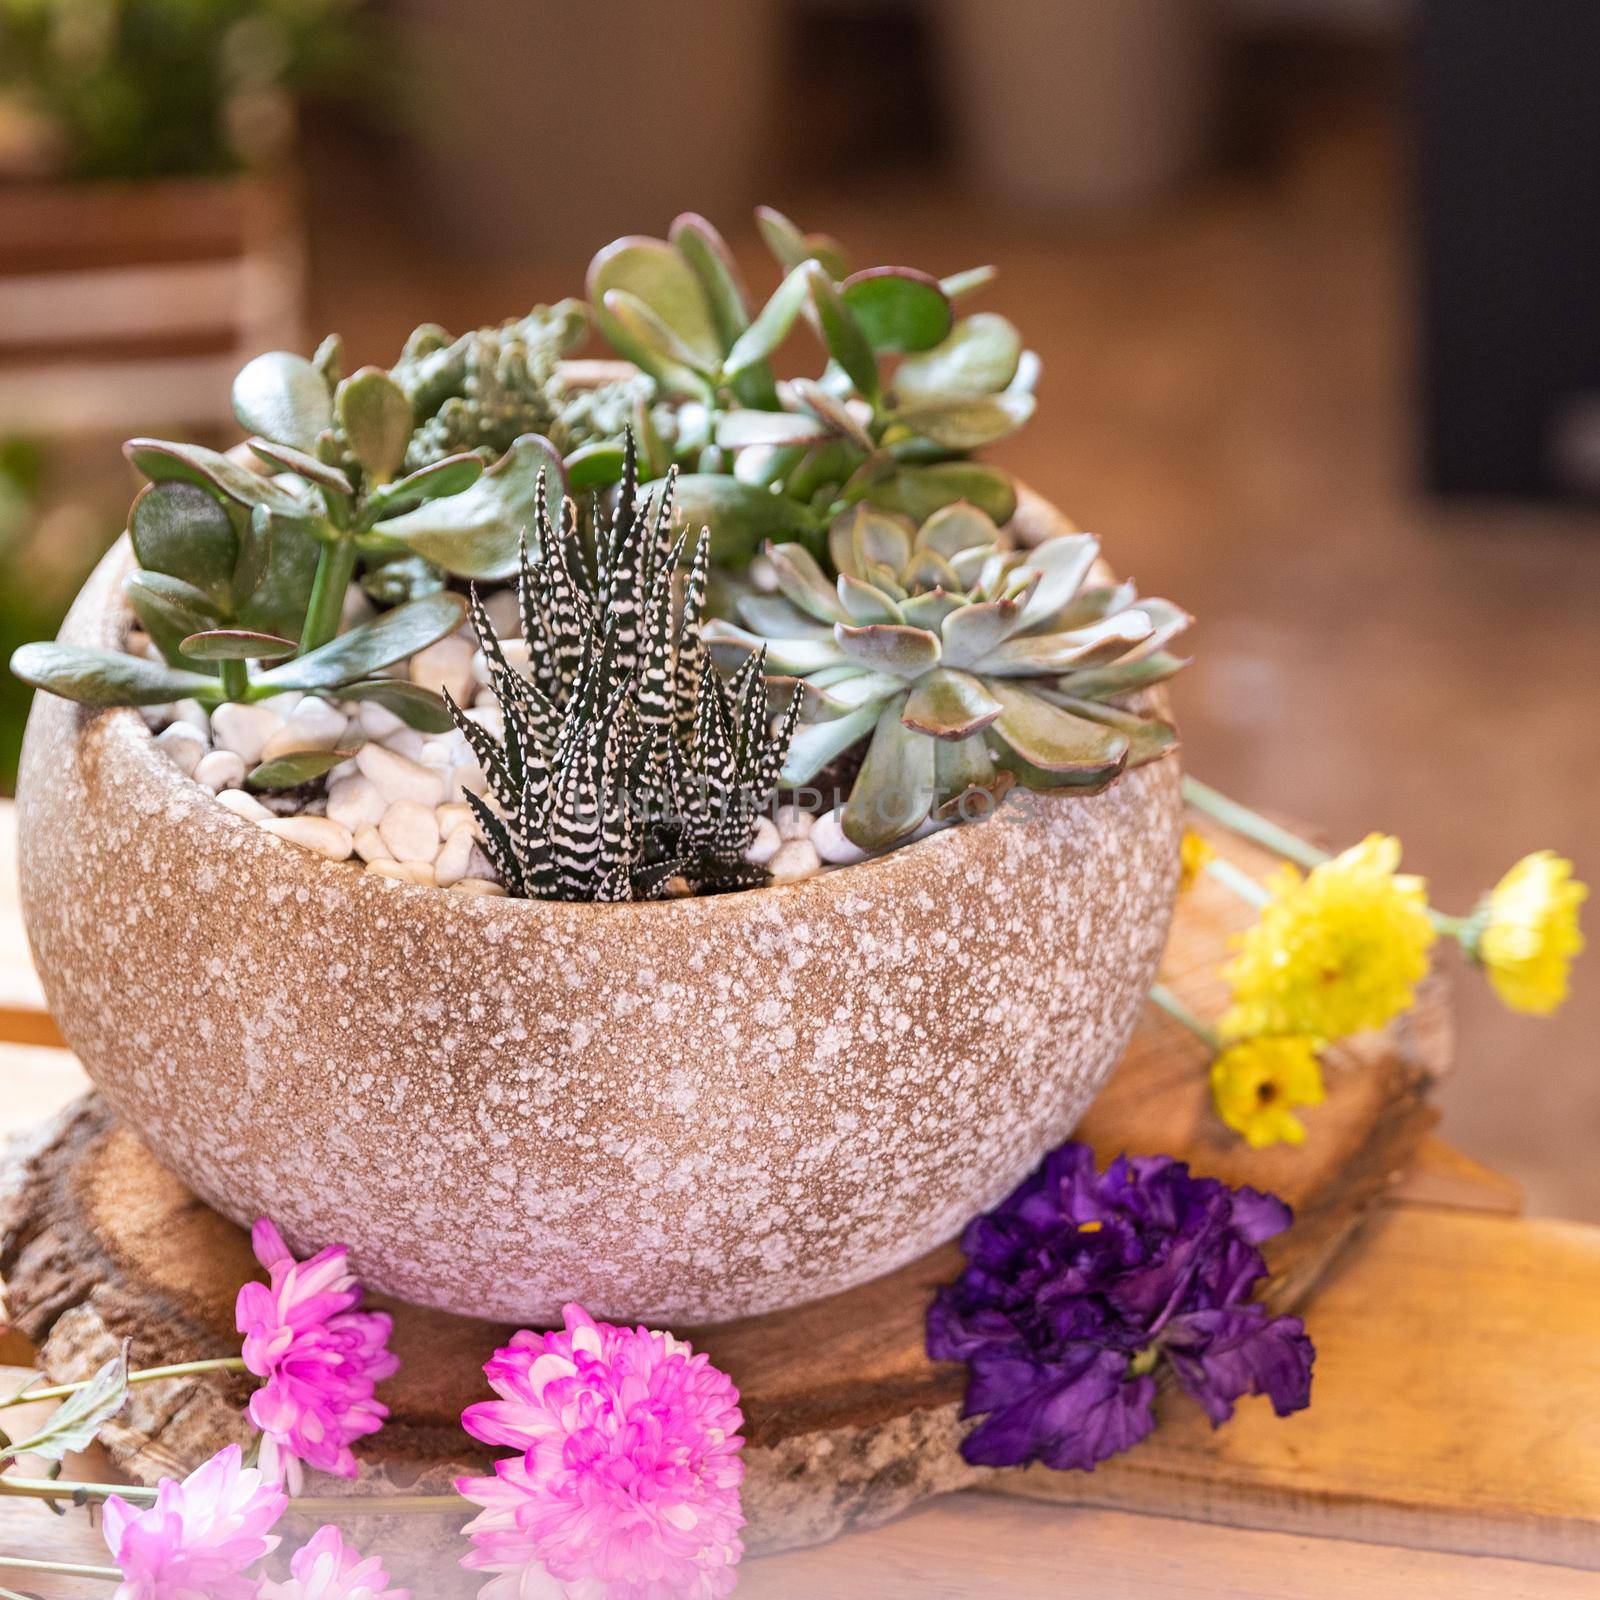 Terrarium plant with succulent, cactus ceramic pot by ferhad